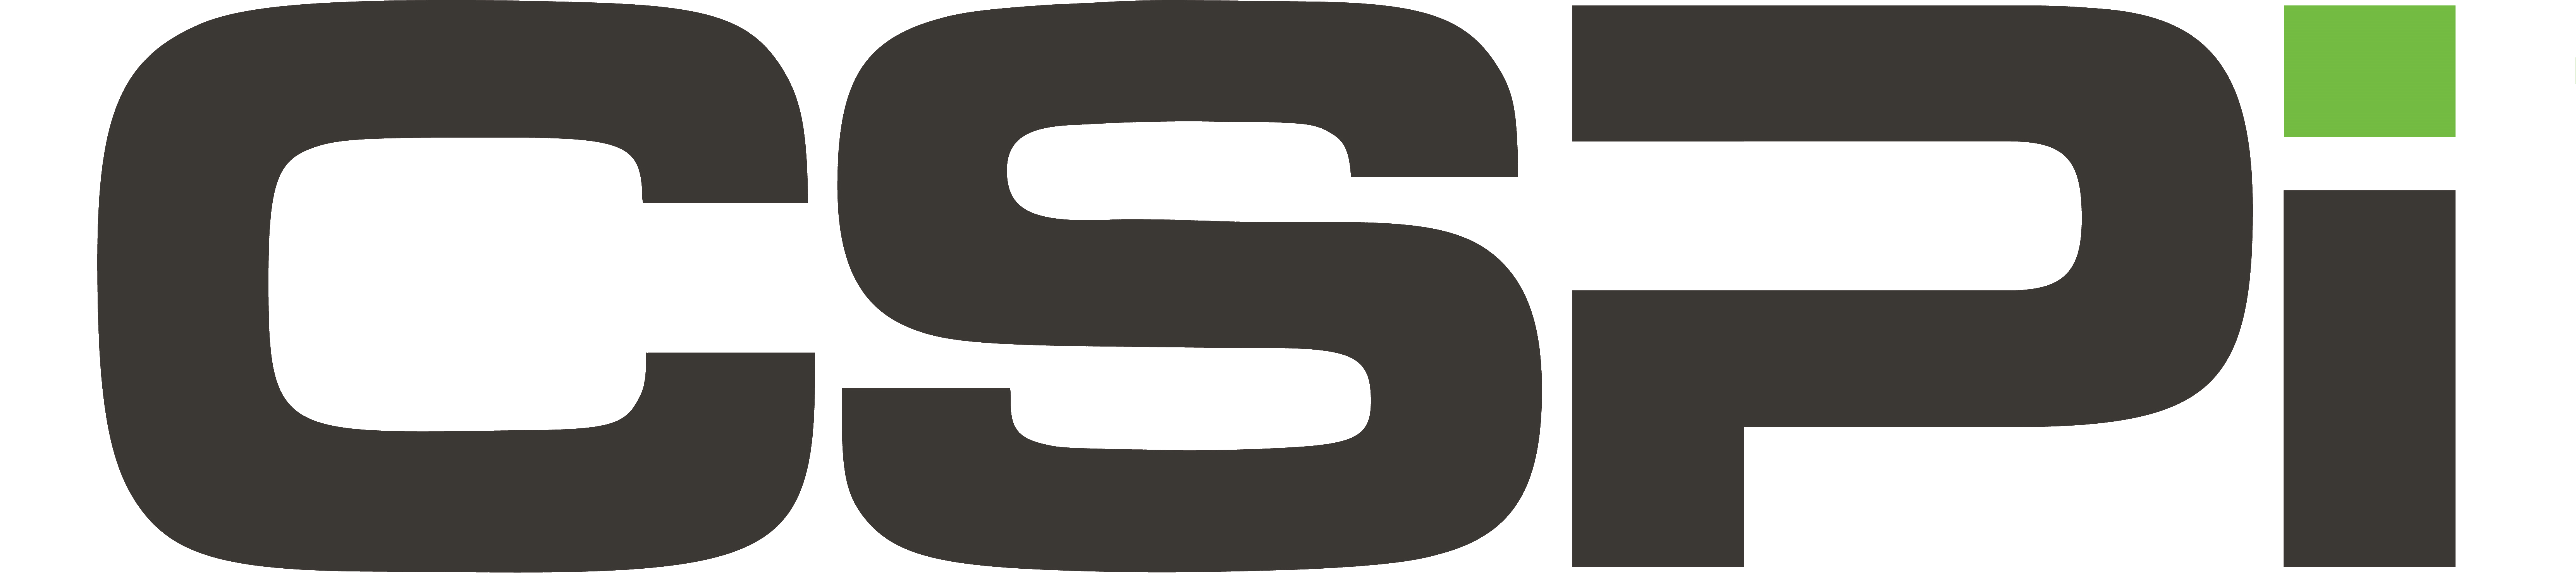 CSPi logo transparent.png